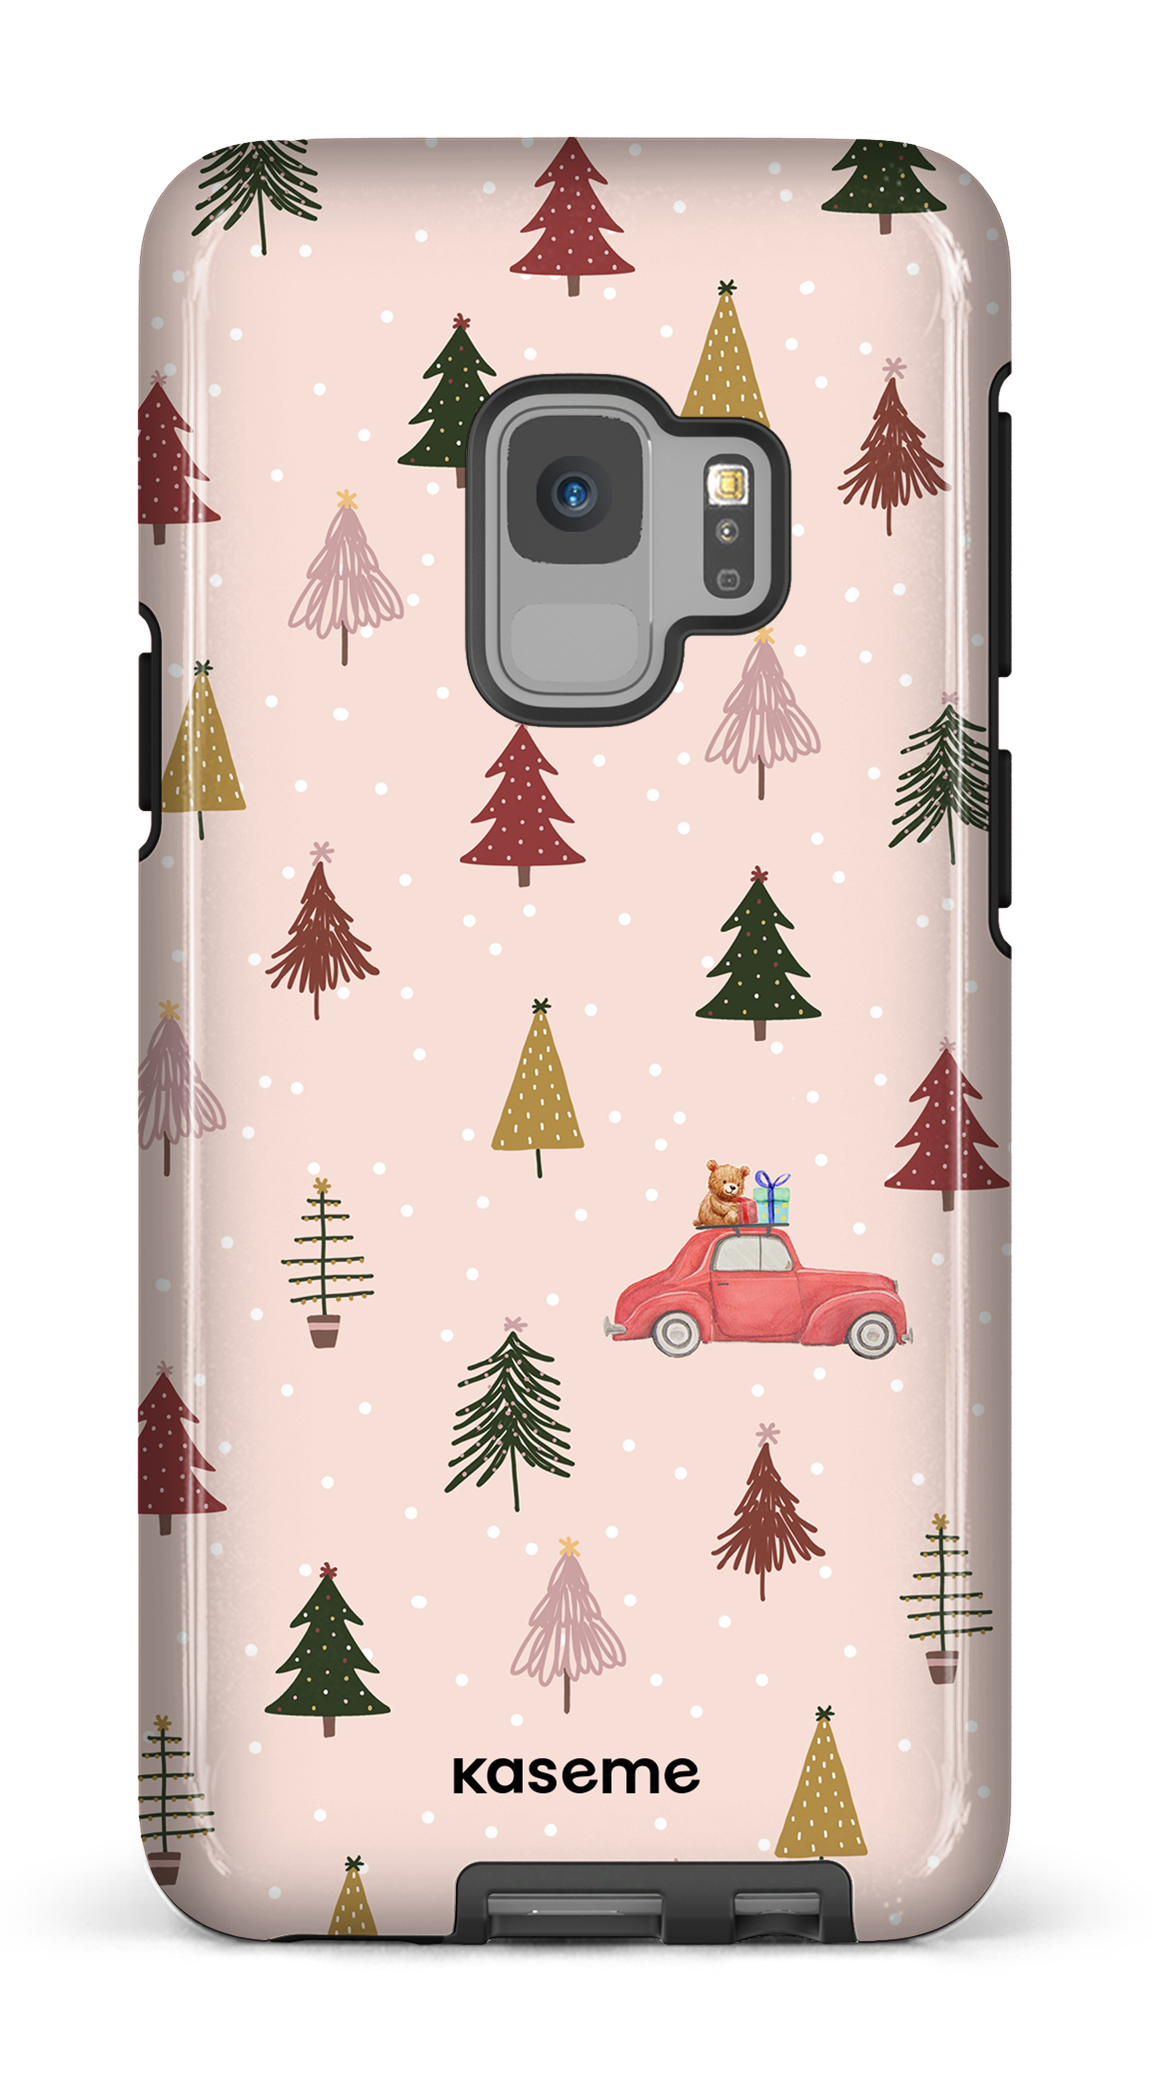 Winter wonderland - Galaxy S9